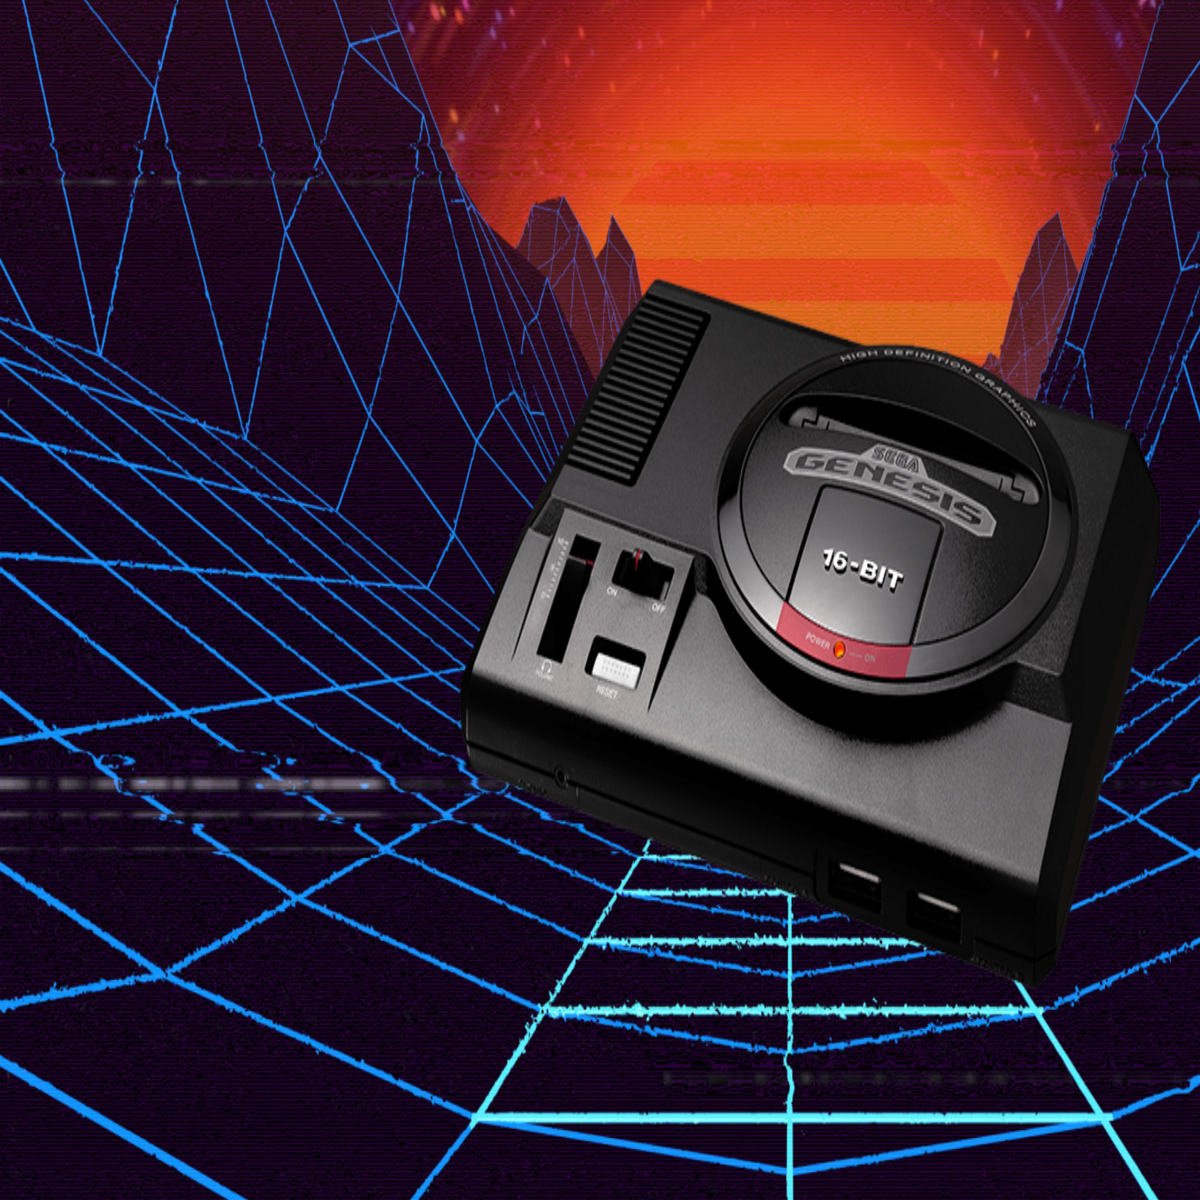 History of the Sega Genesis – Dawn of the 16-bit Era